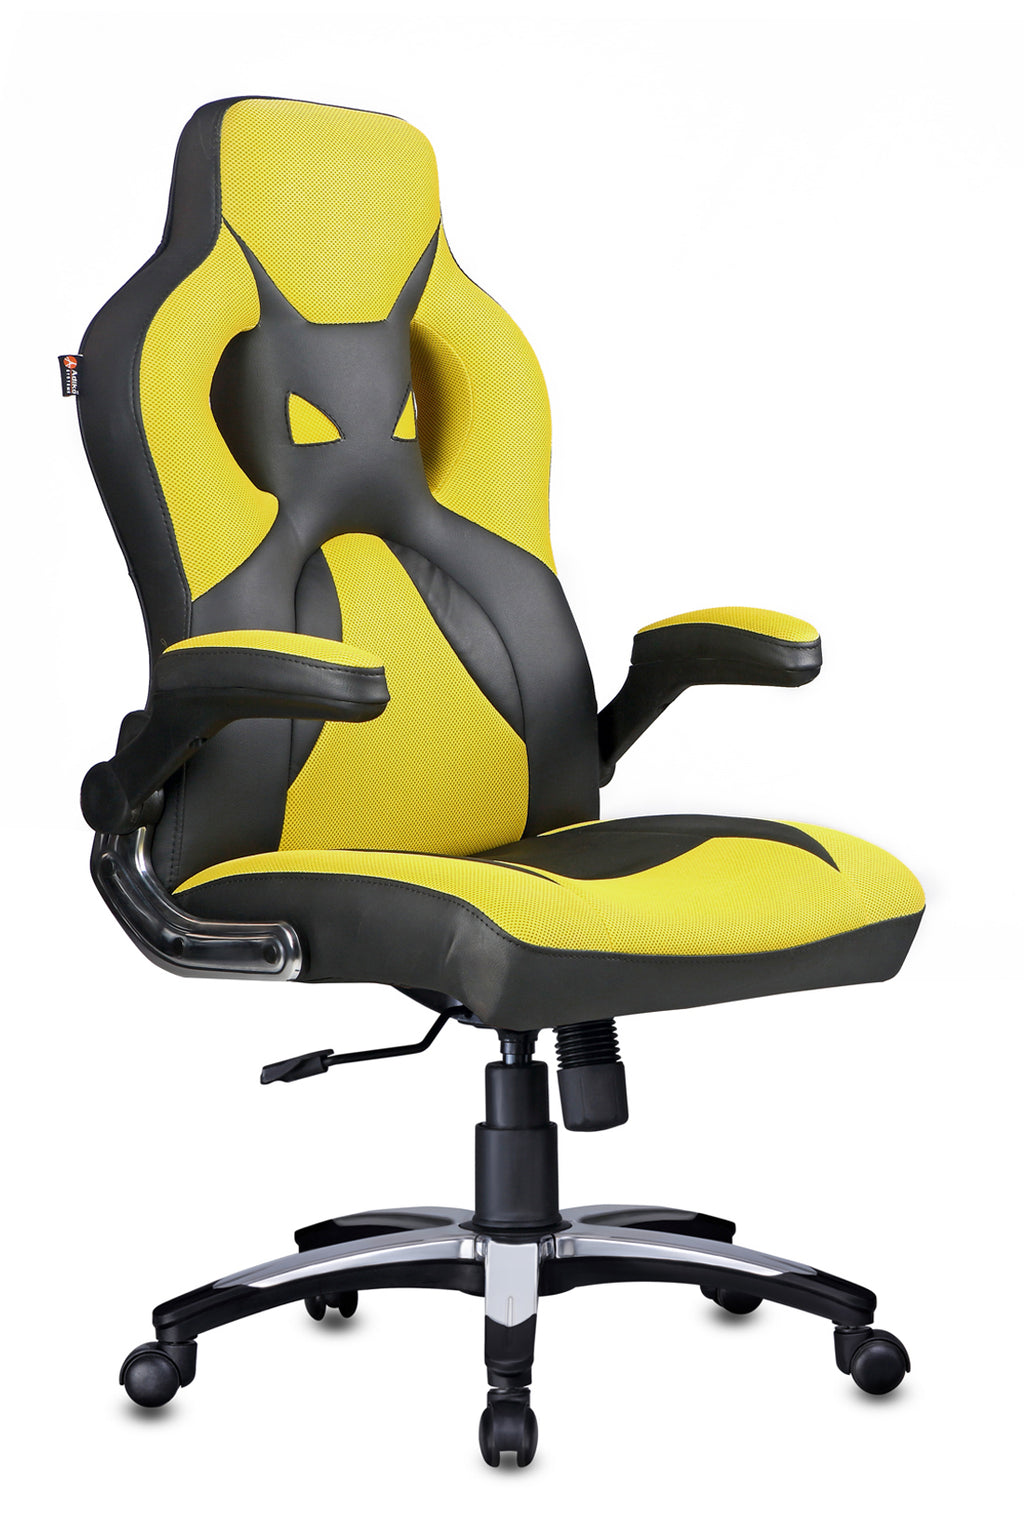 Detec™ Adiko Elegant Gaming Chair In Yellow